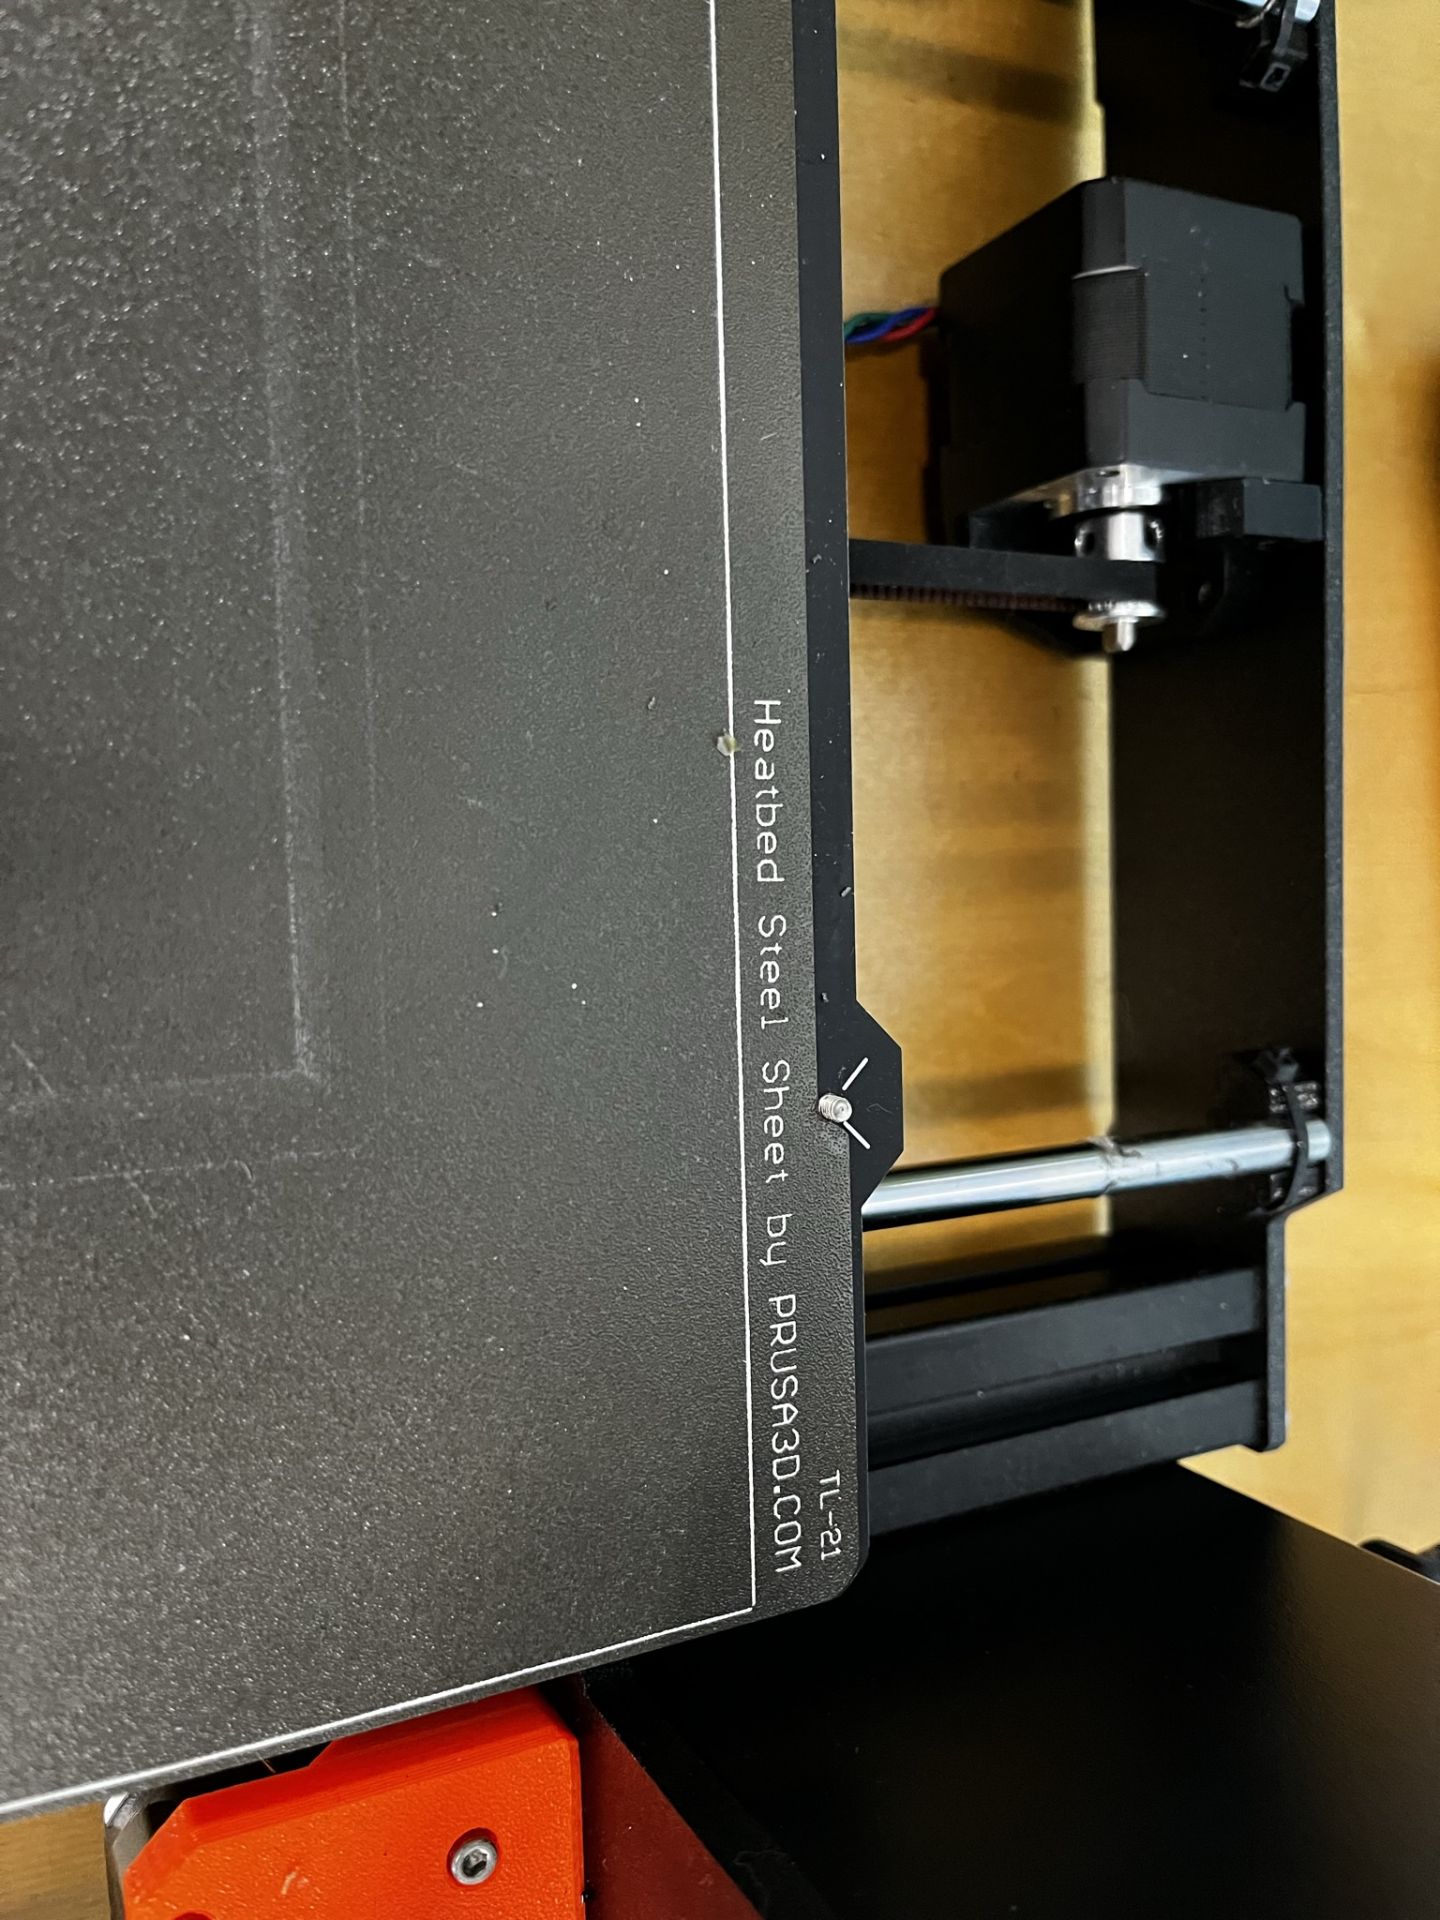 Original Pursa i3 MK3S - 3D Printer & Supplies - Image 3 of 5